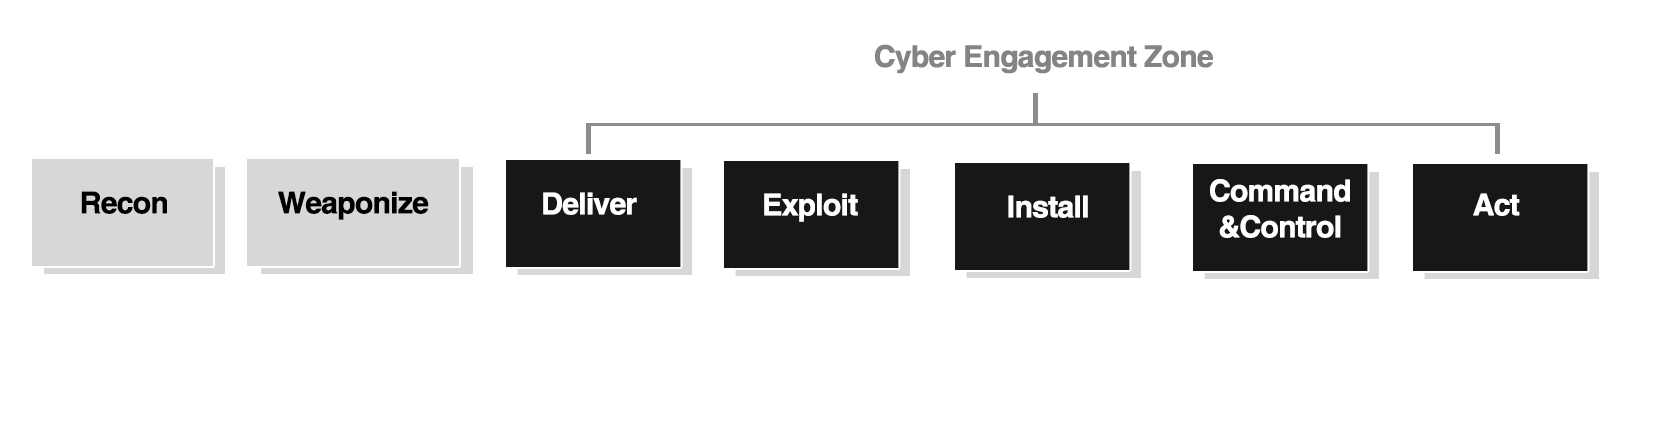 基于Cyber Kill Chain的Cyber Engagement Zone模型